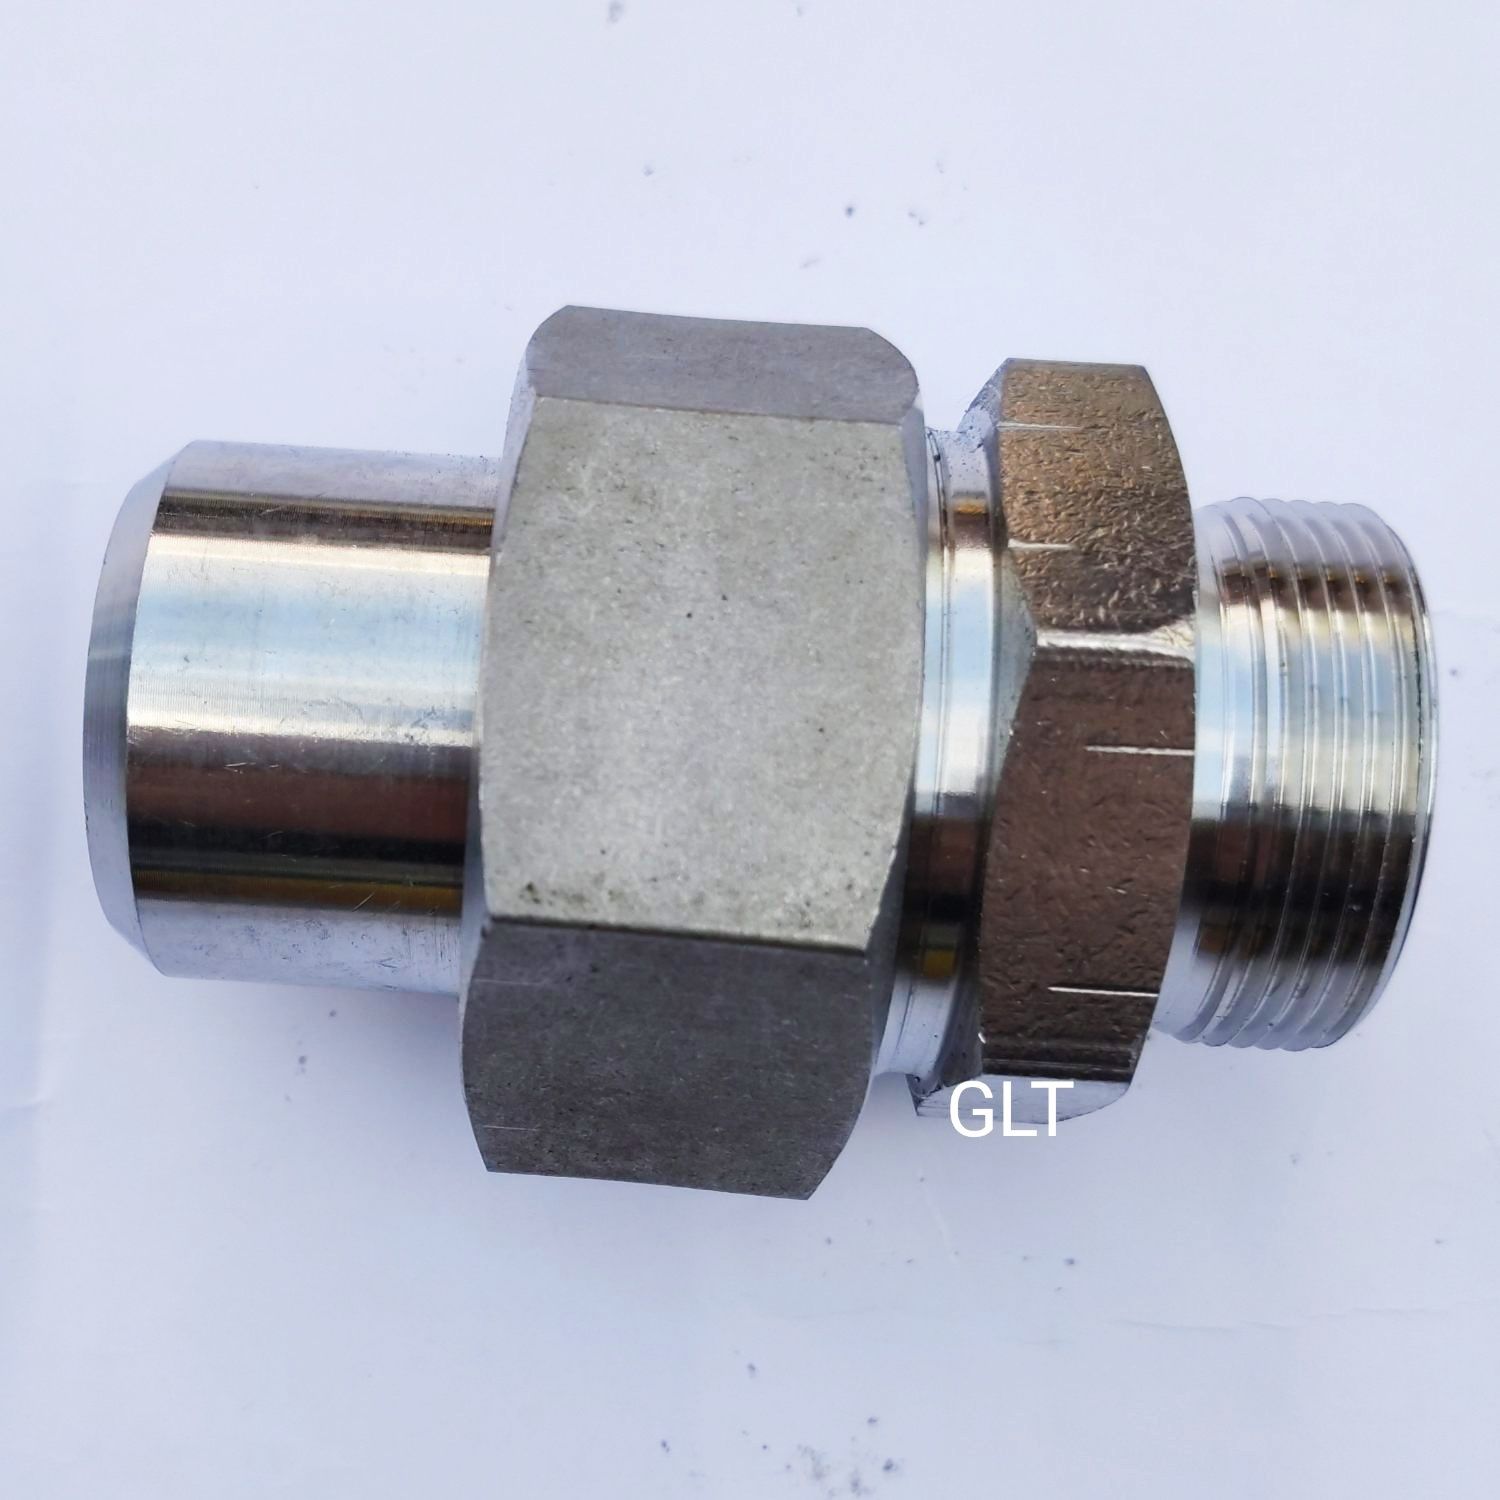 glt 高品质不锈钢焊接式端直通高压接头 jb966-28